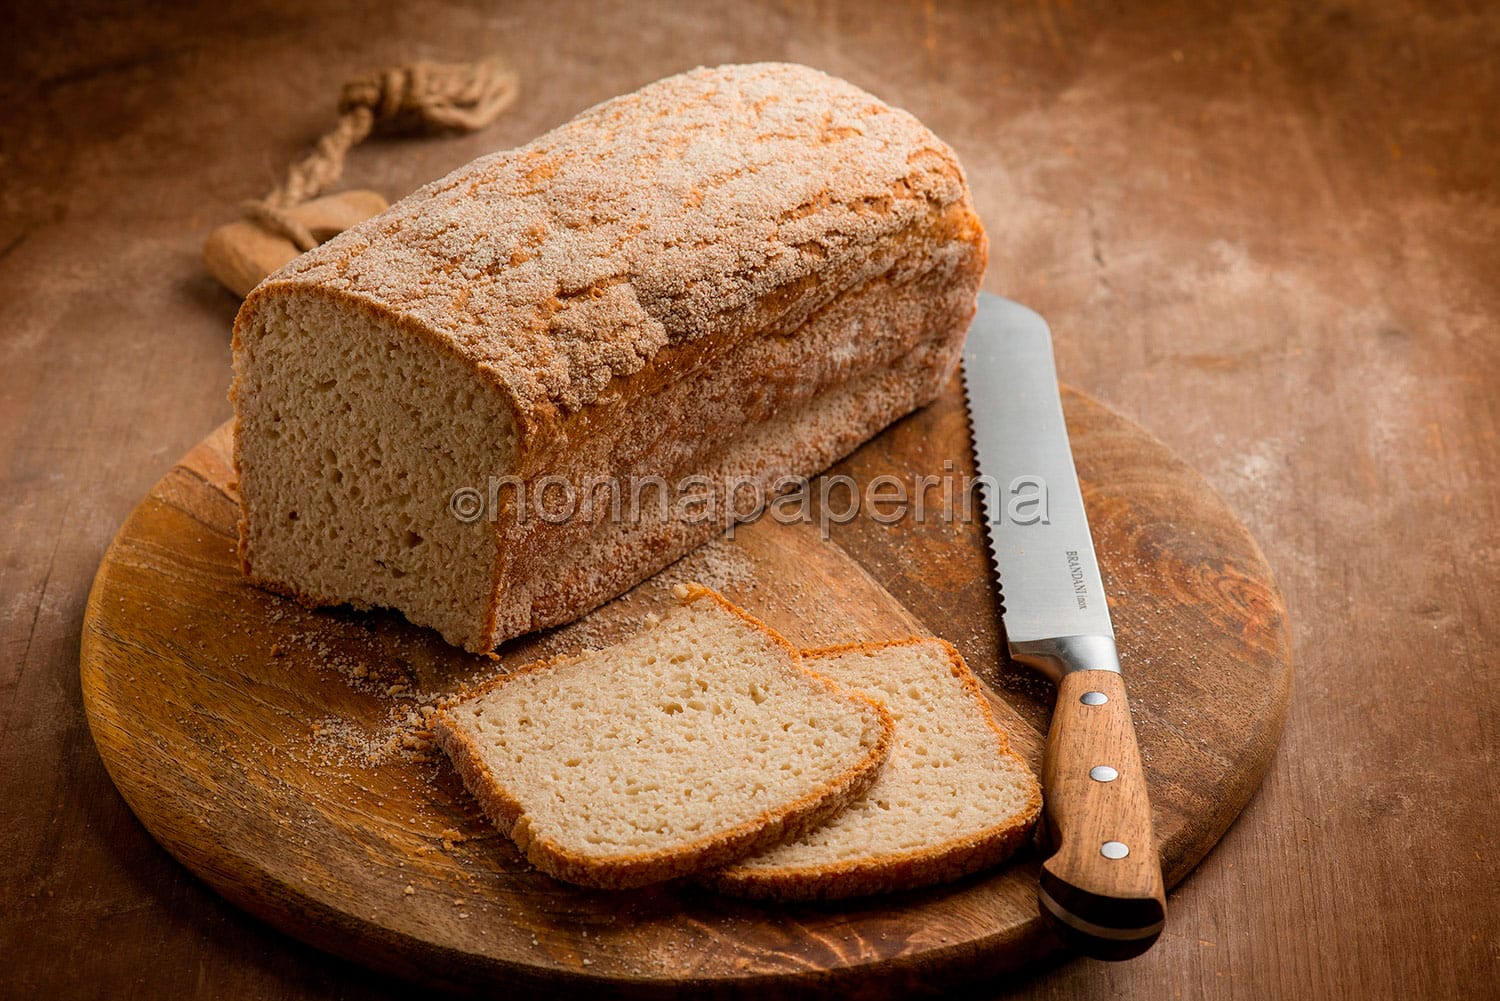 Pane in cassetta al fonio per una merenda salata senza glutine